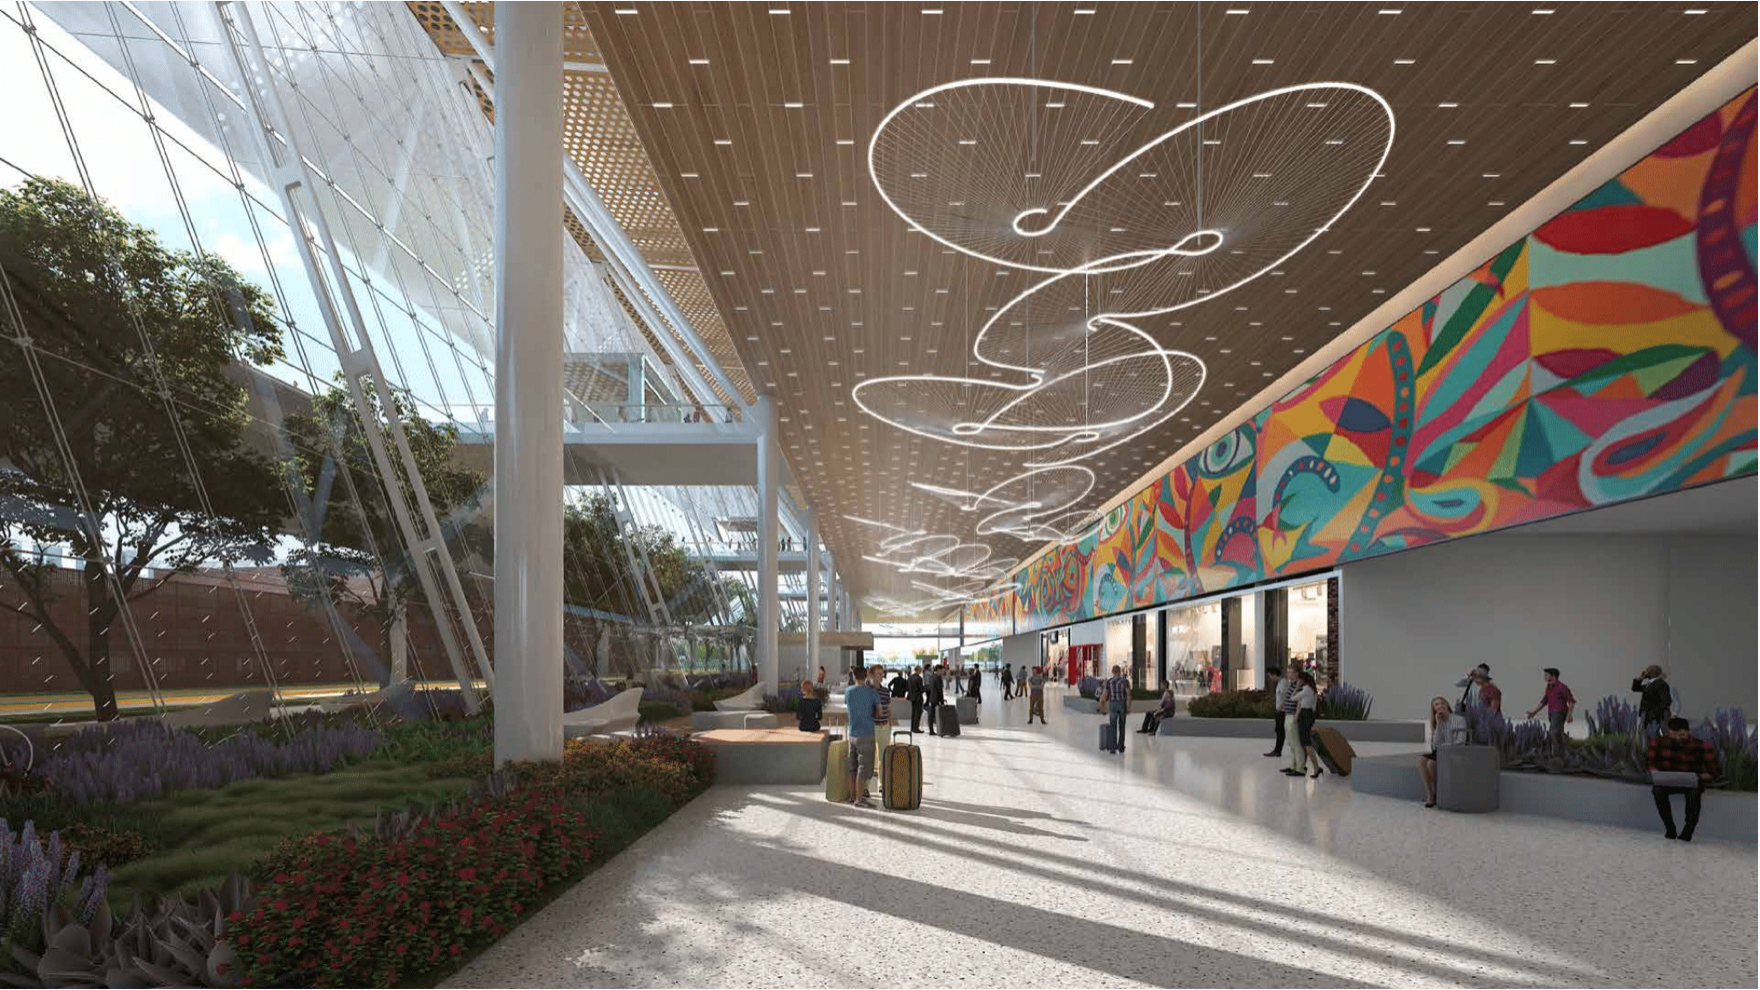 Guadalajara Airport Terminal with local art